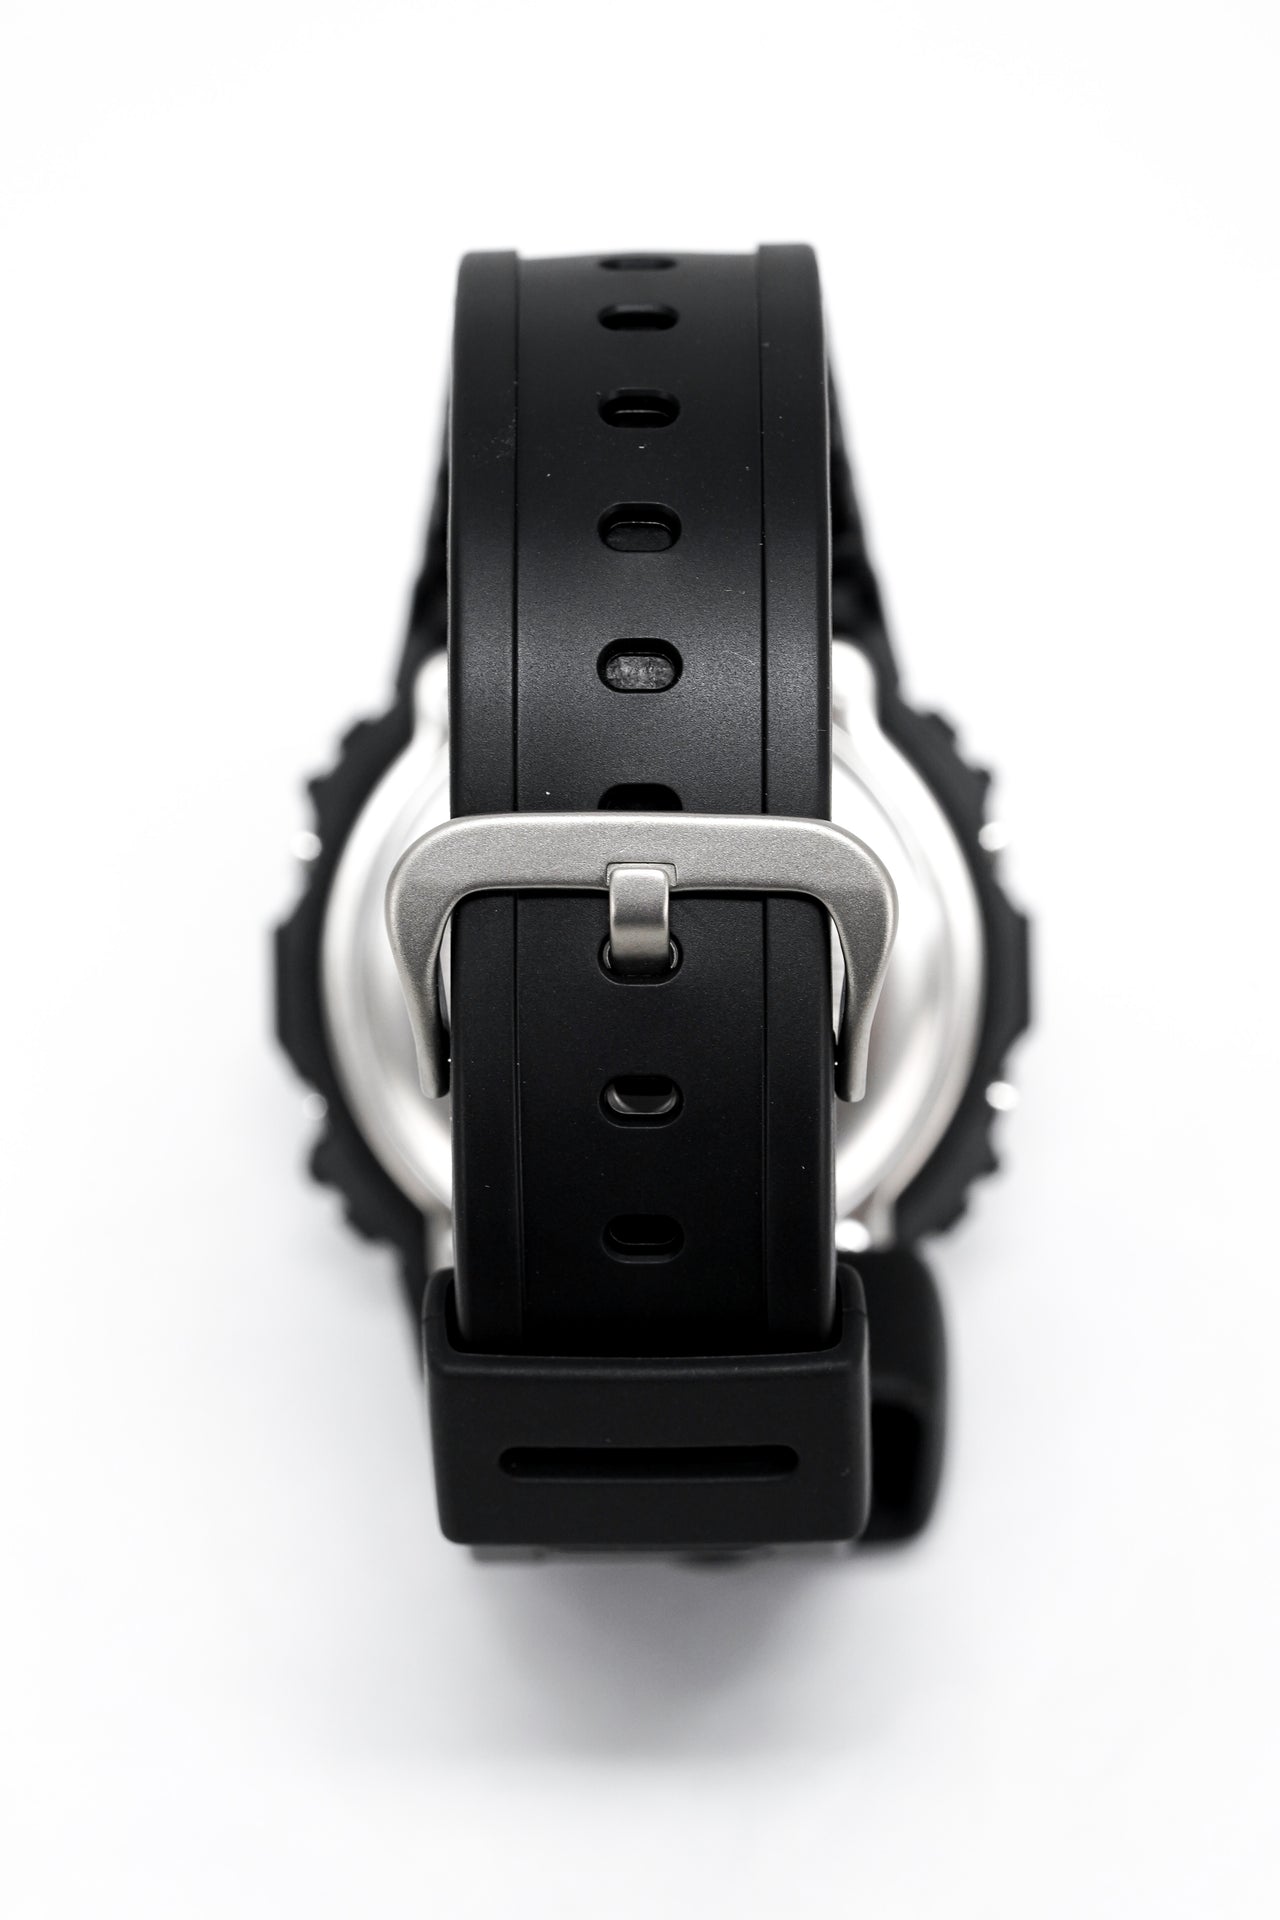 Casio G-Shock Watch Men's Black on Black DW-5600BB-1DR